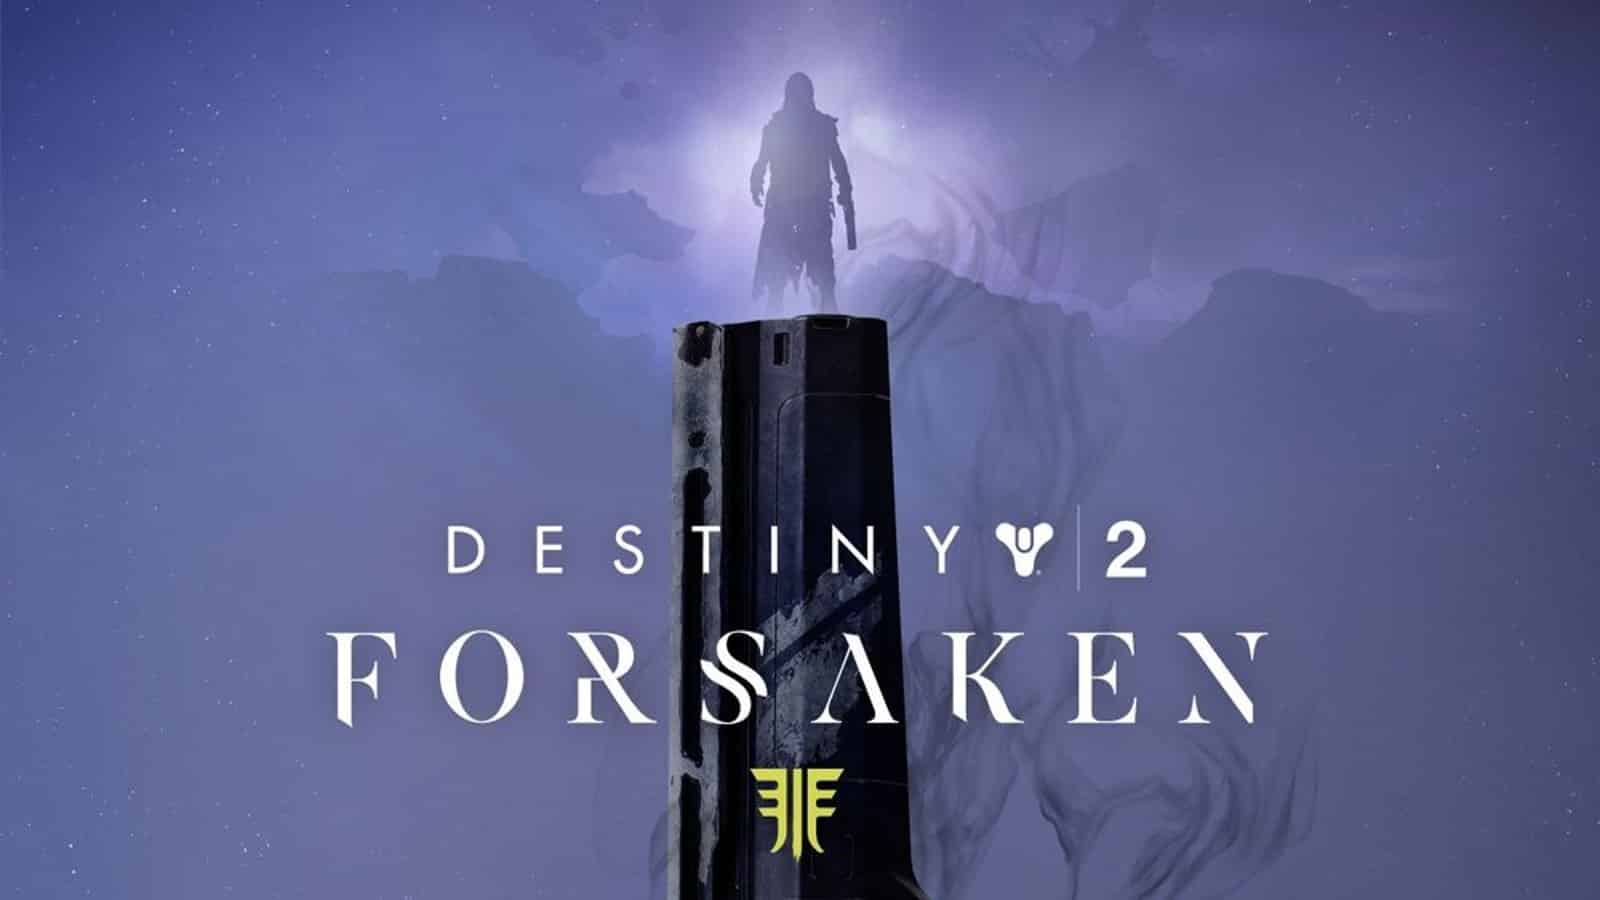 Destiny 2's Forsaken DLC with key art